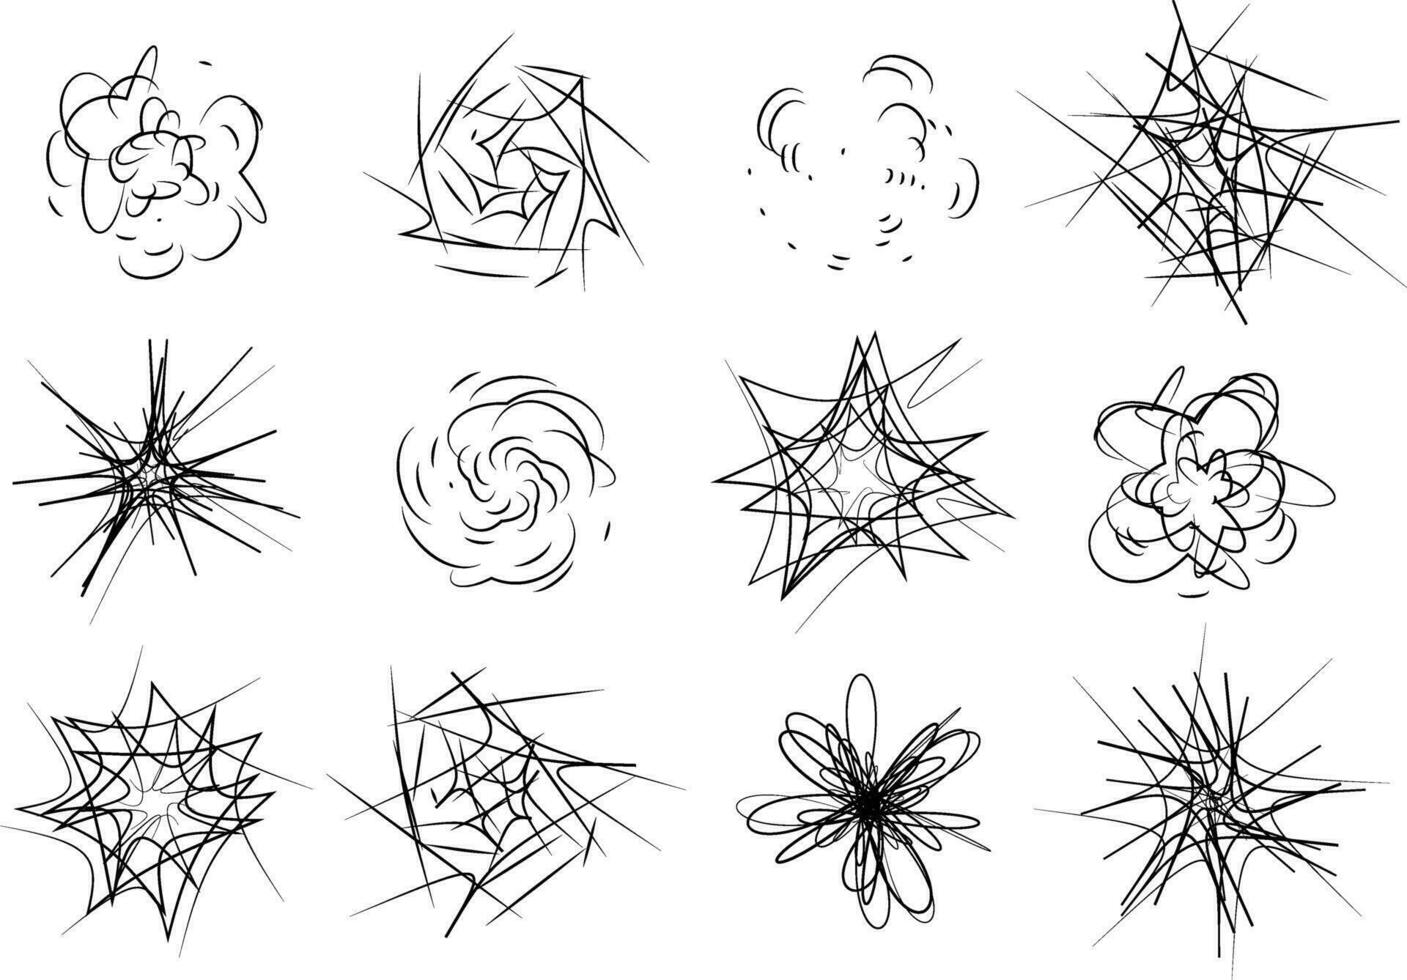 smäll och exploderande symboler uppsättning tecknad serie komisk bom effekter design element vektor